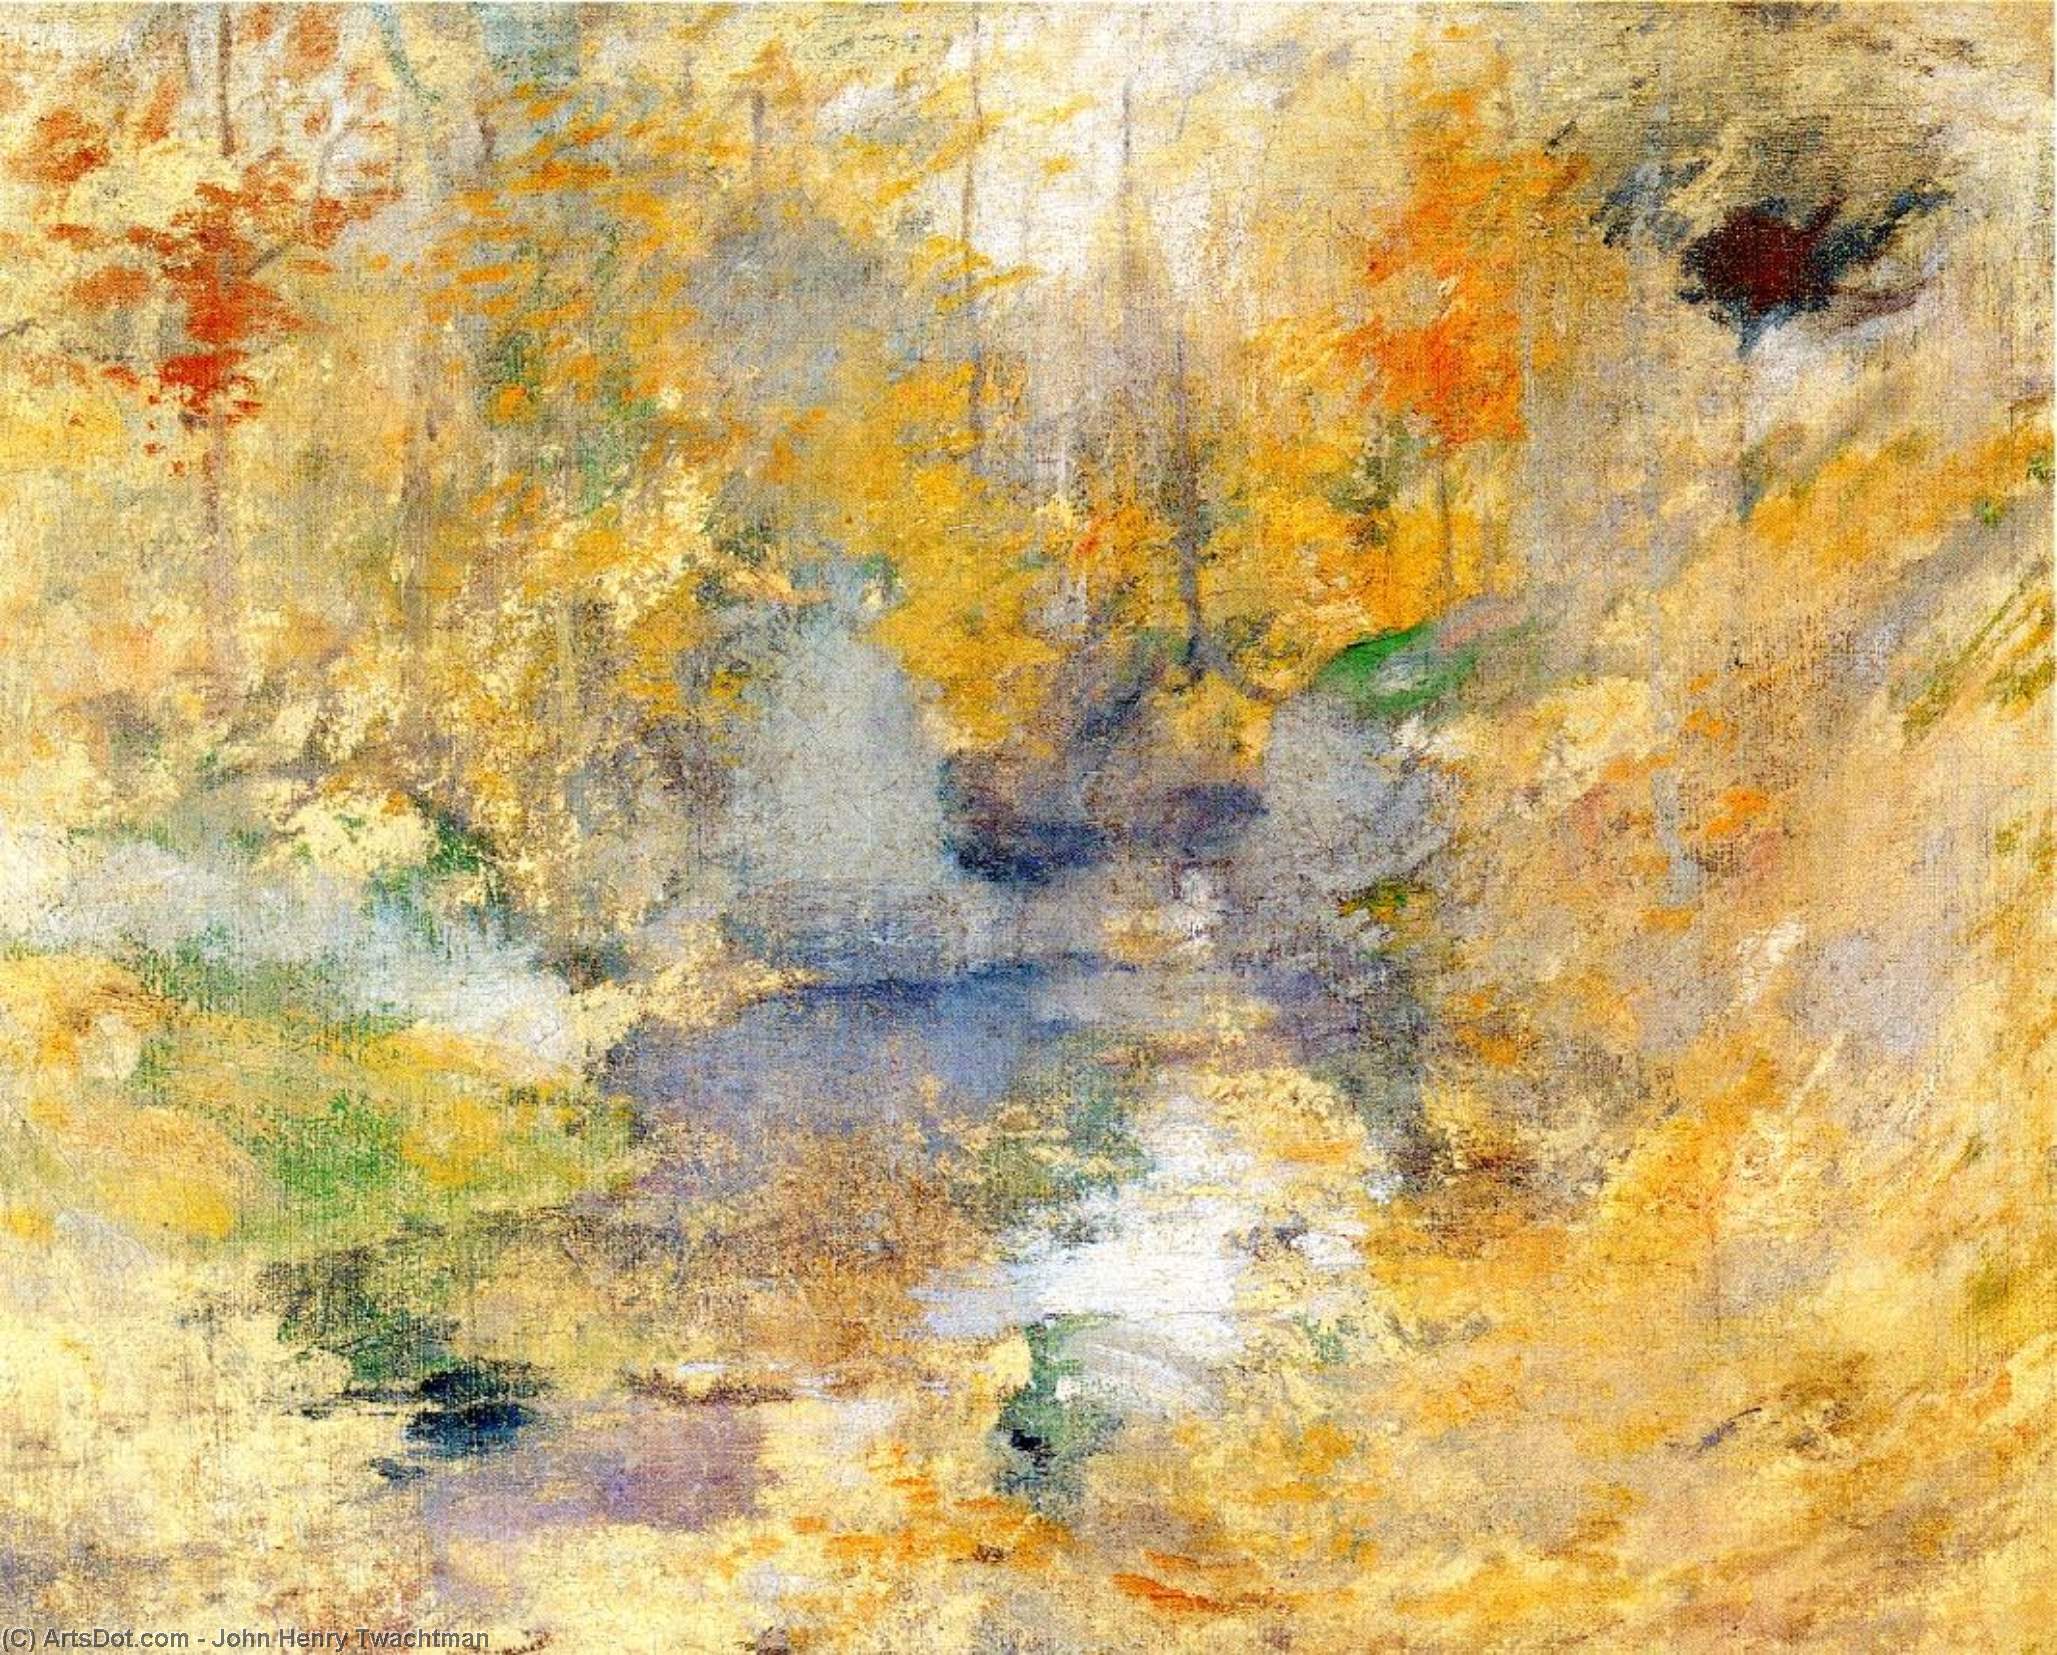 WikiOO.org - Enciklopedija likovnih umjetnosti - Slikarstvo, umjetnička djela John Henry Twachtman - Hemlock Pool (also known as Autumn)